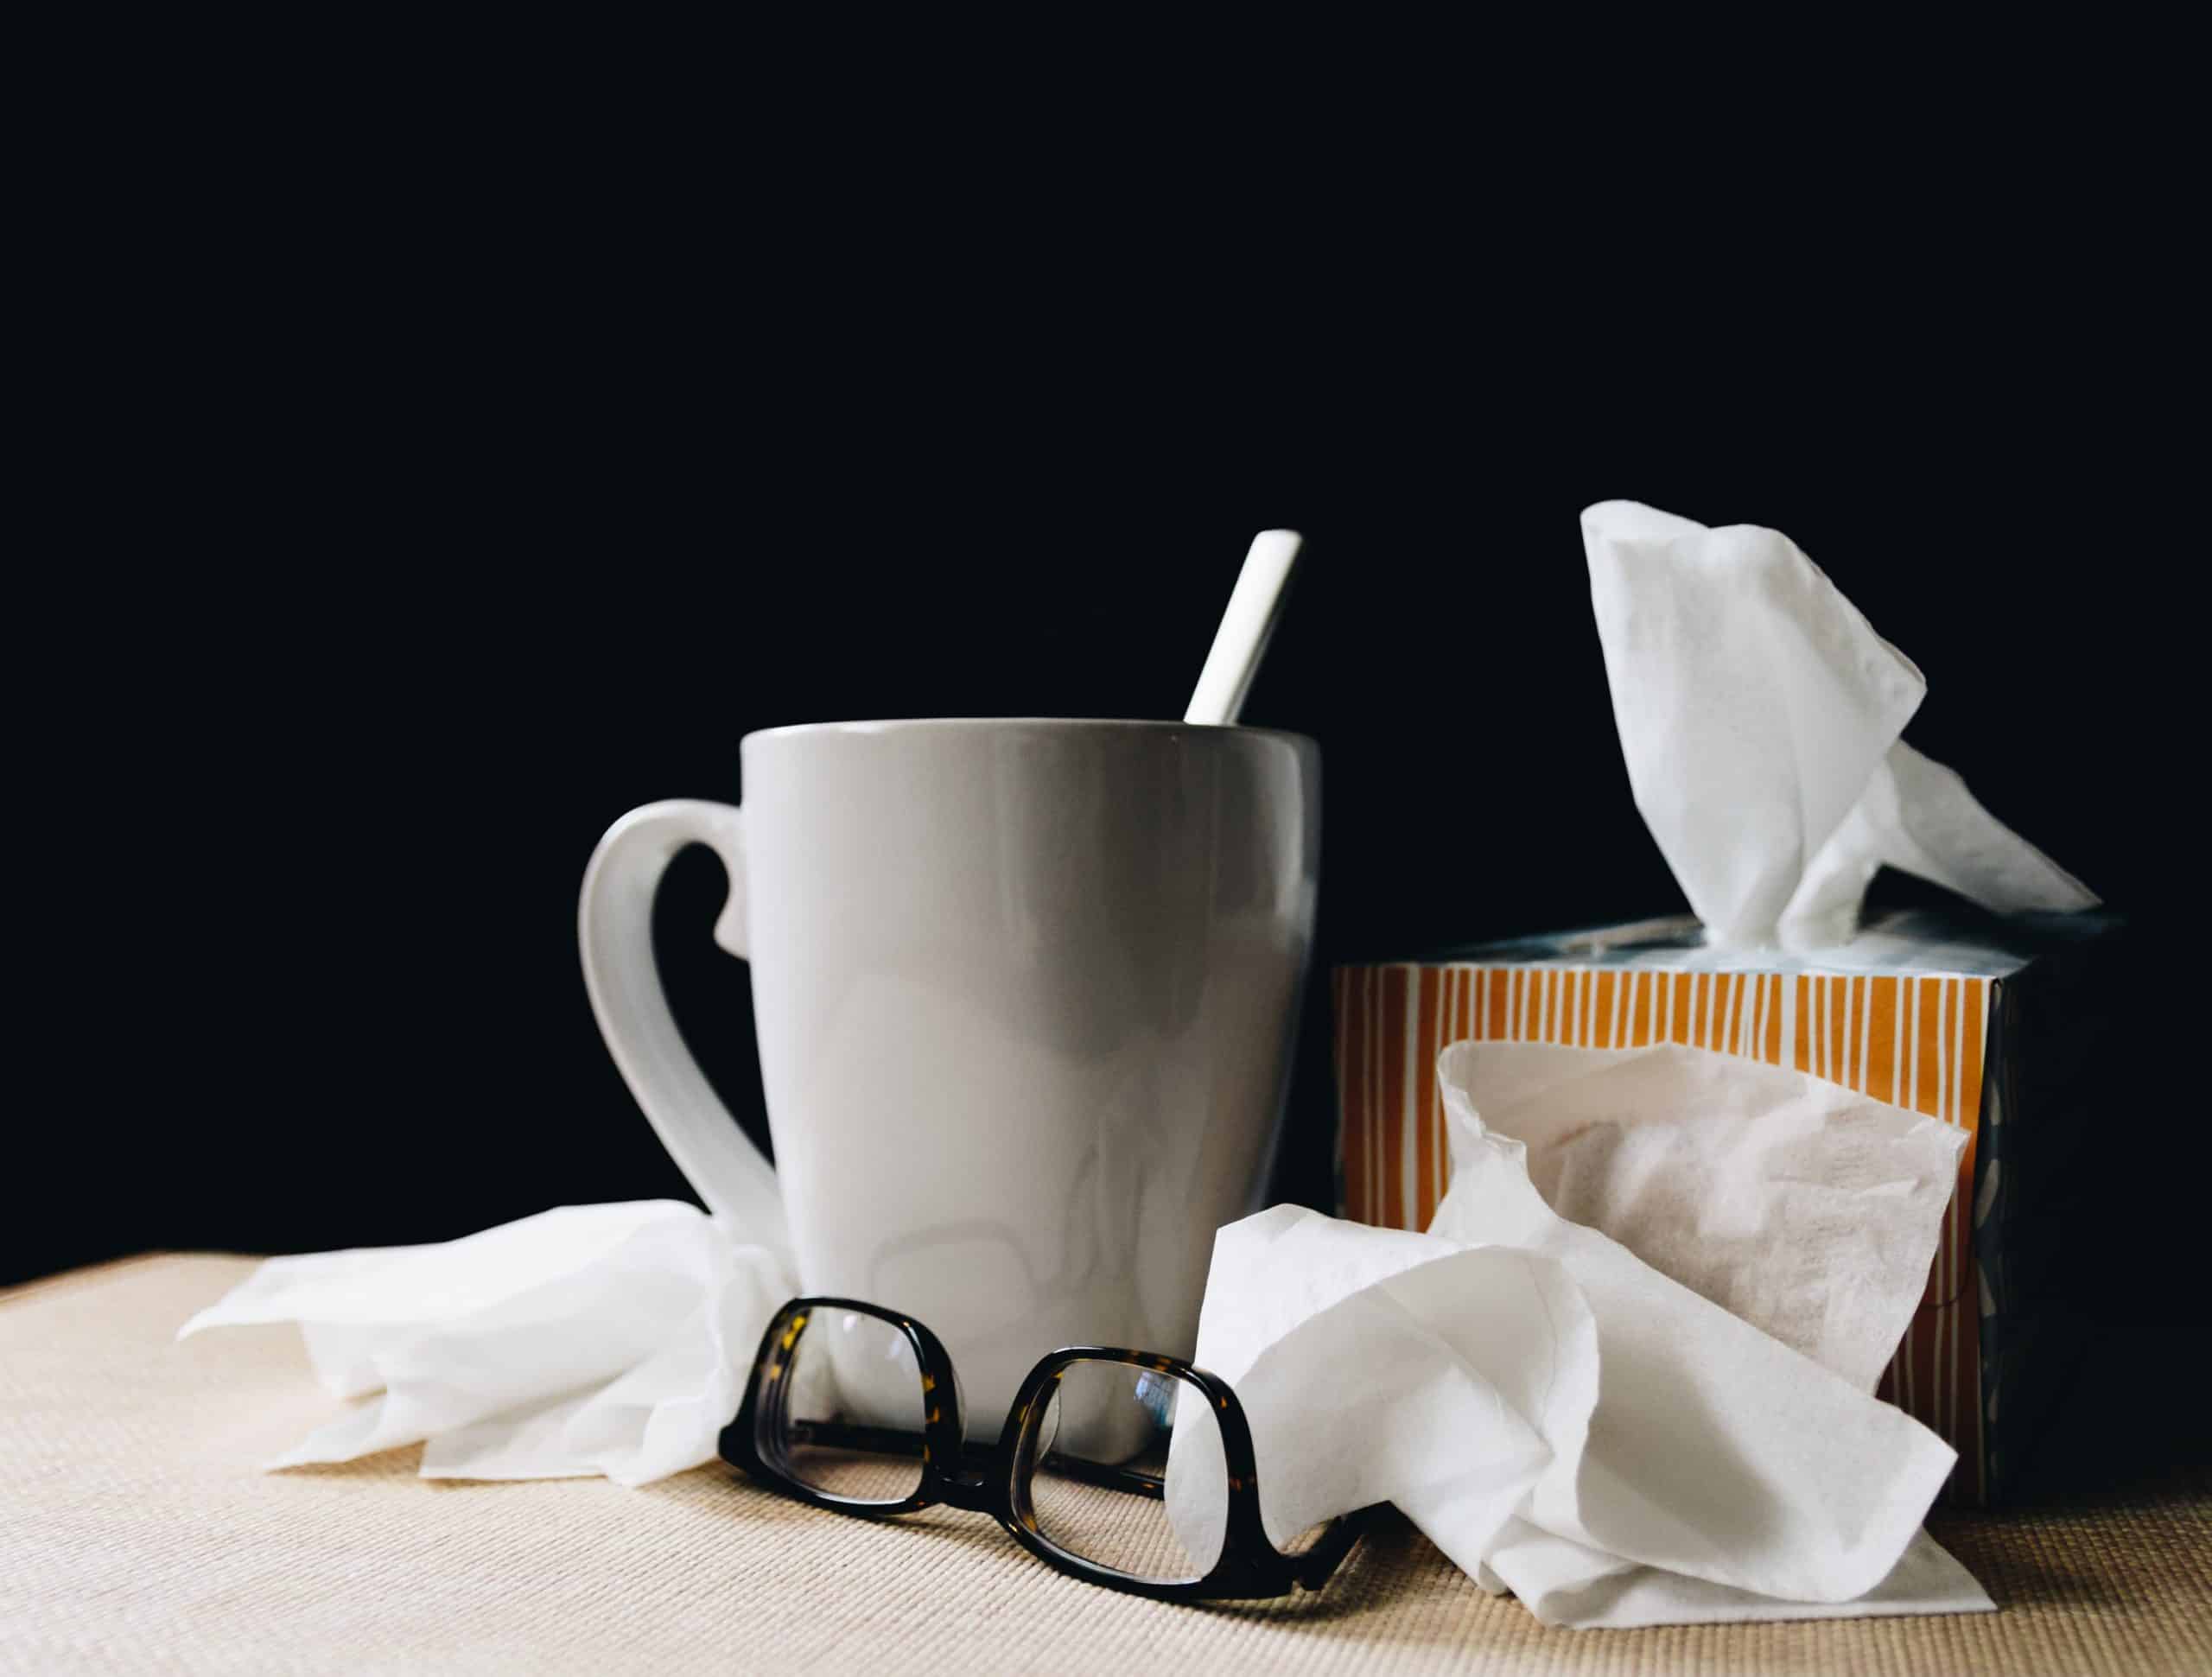 Virus Symptoms: Flu vs COVID